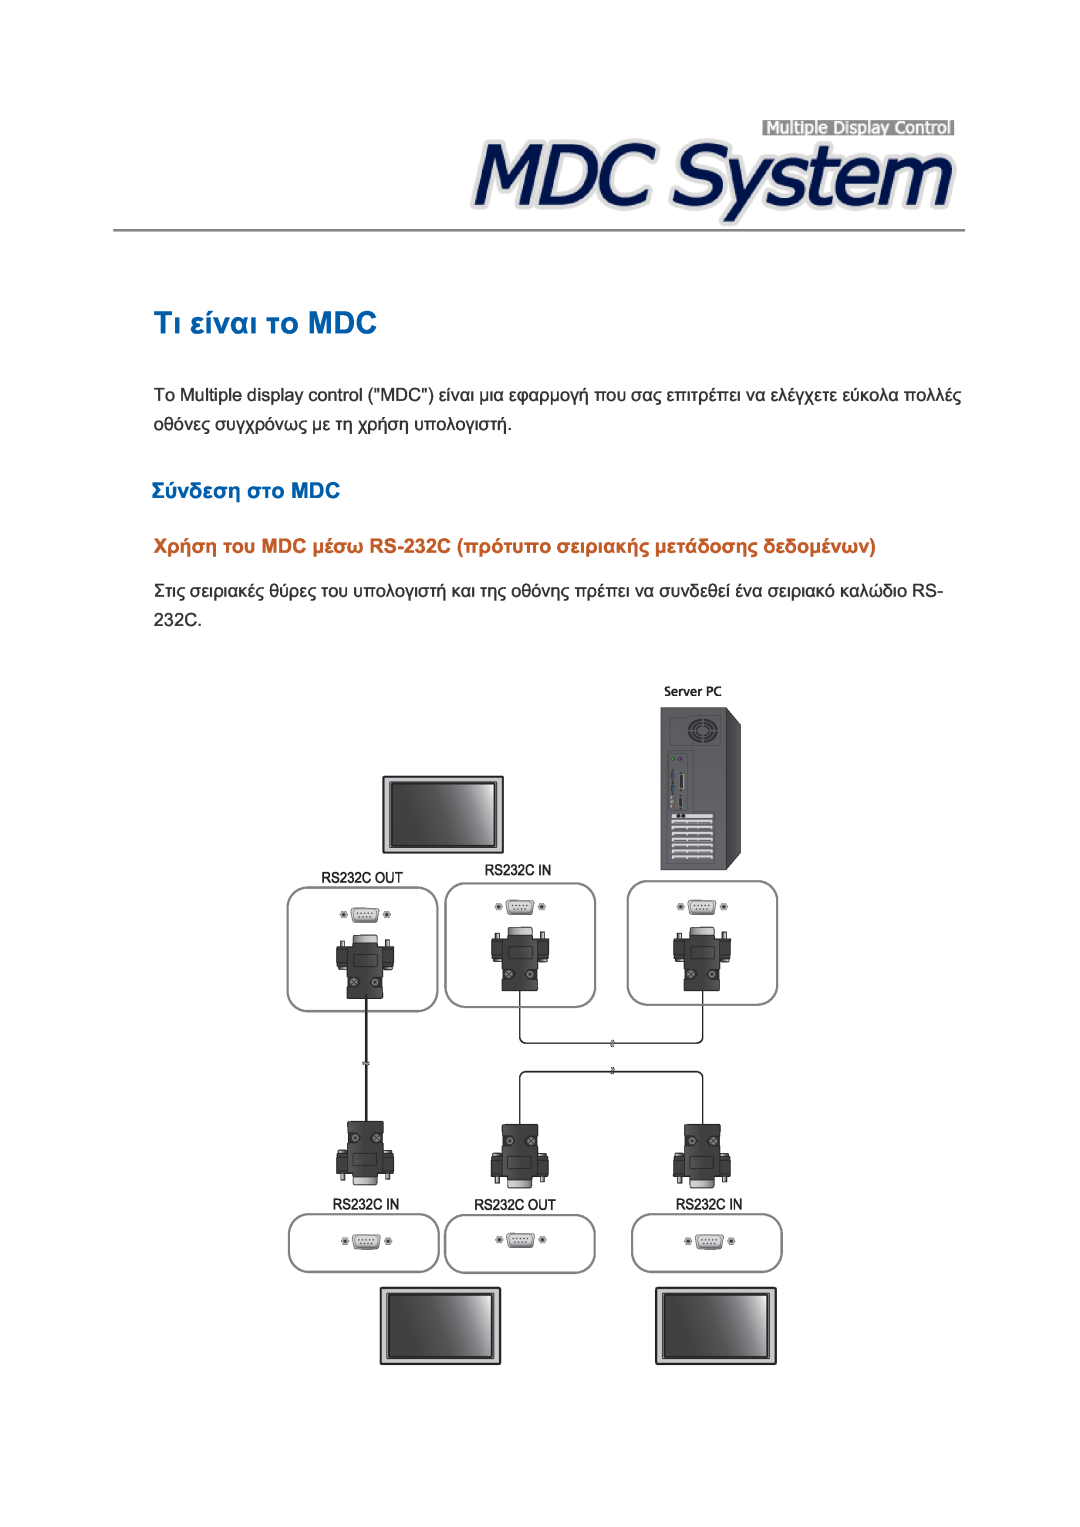 Samsung LH40GWSLBC/EN, LH40GWTLBC/EN, LH46GWPLBC/EN, LH40GWPLBC/EN, LH46GWSLBC/EN MDC RS-232C, Multiple display control MDC 